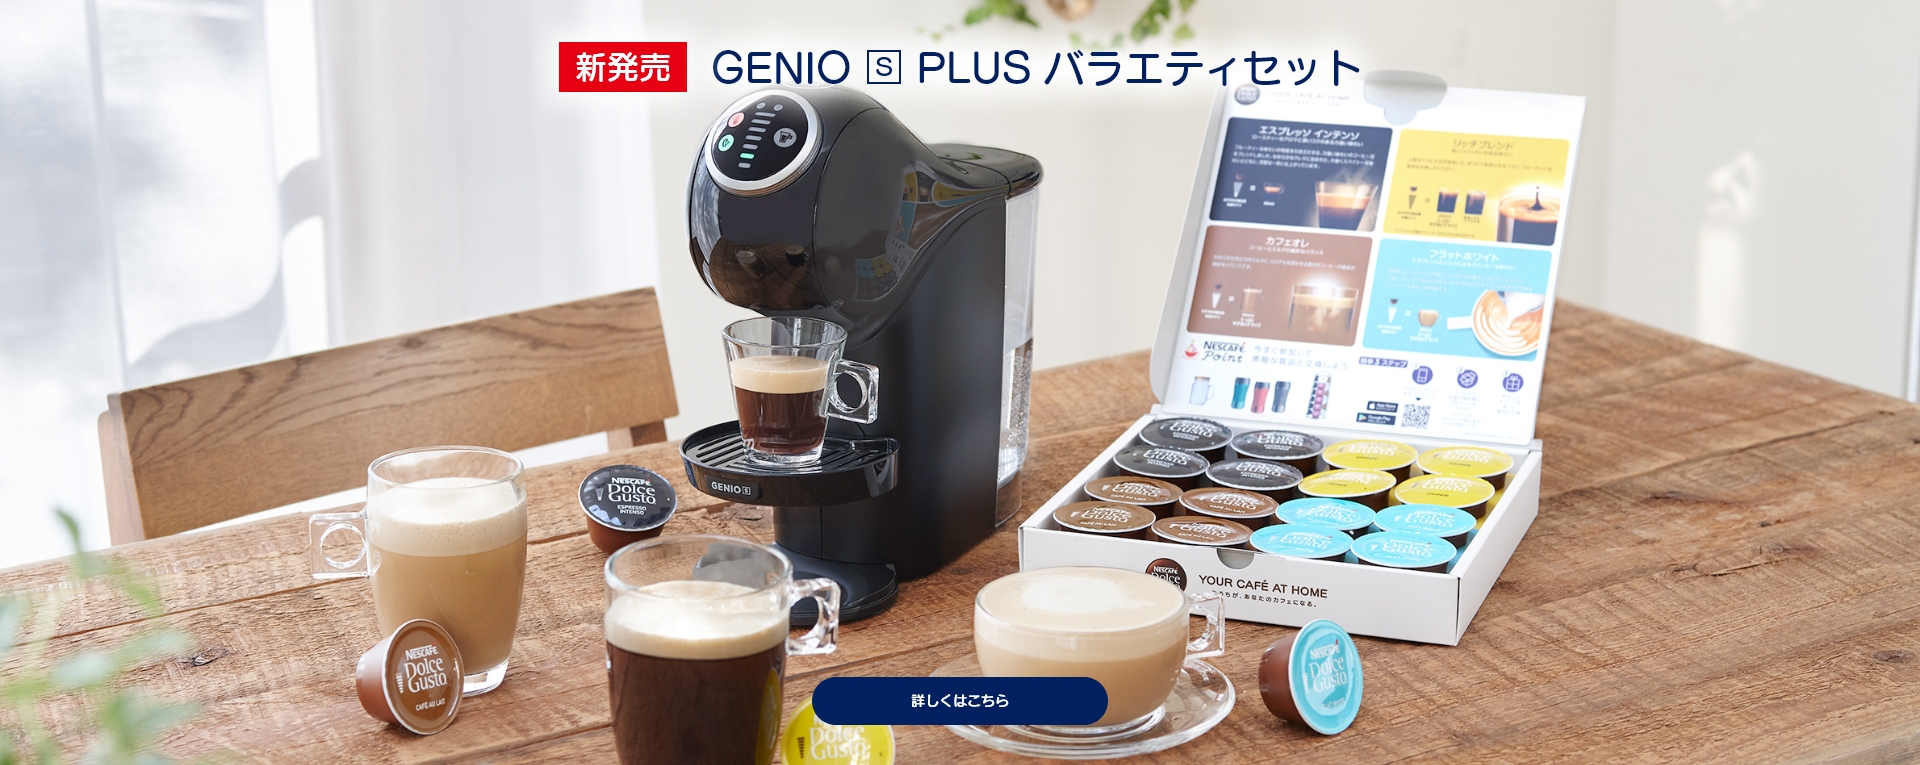 新発売 GENIO S PLUS バラエティセット